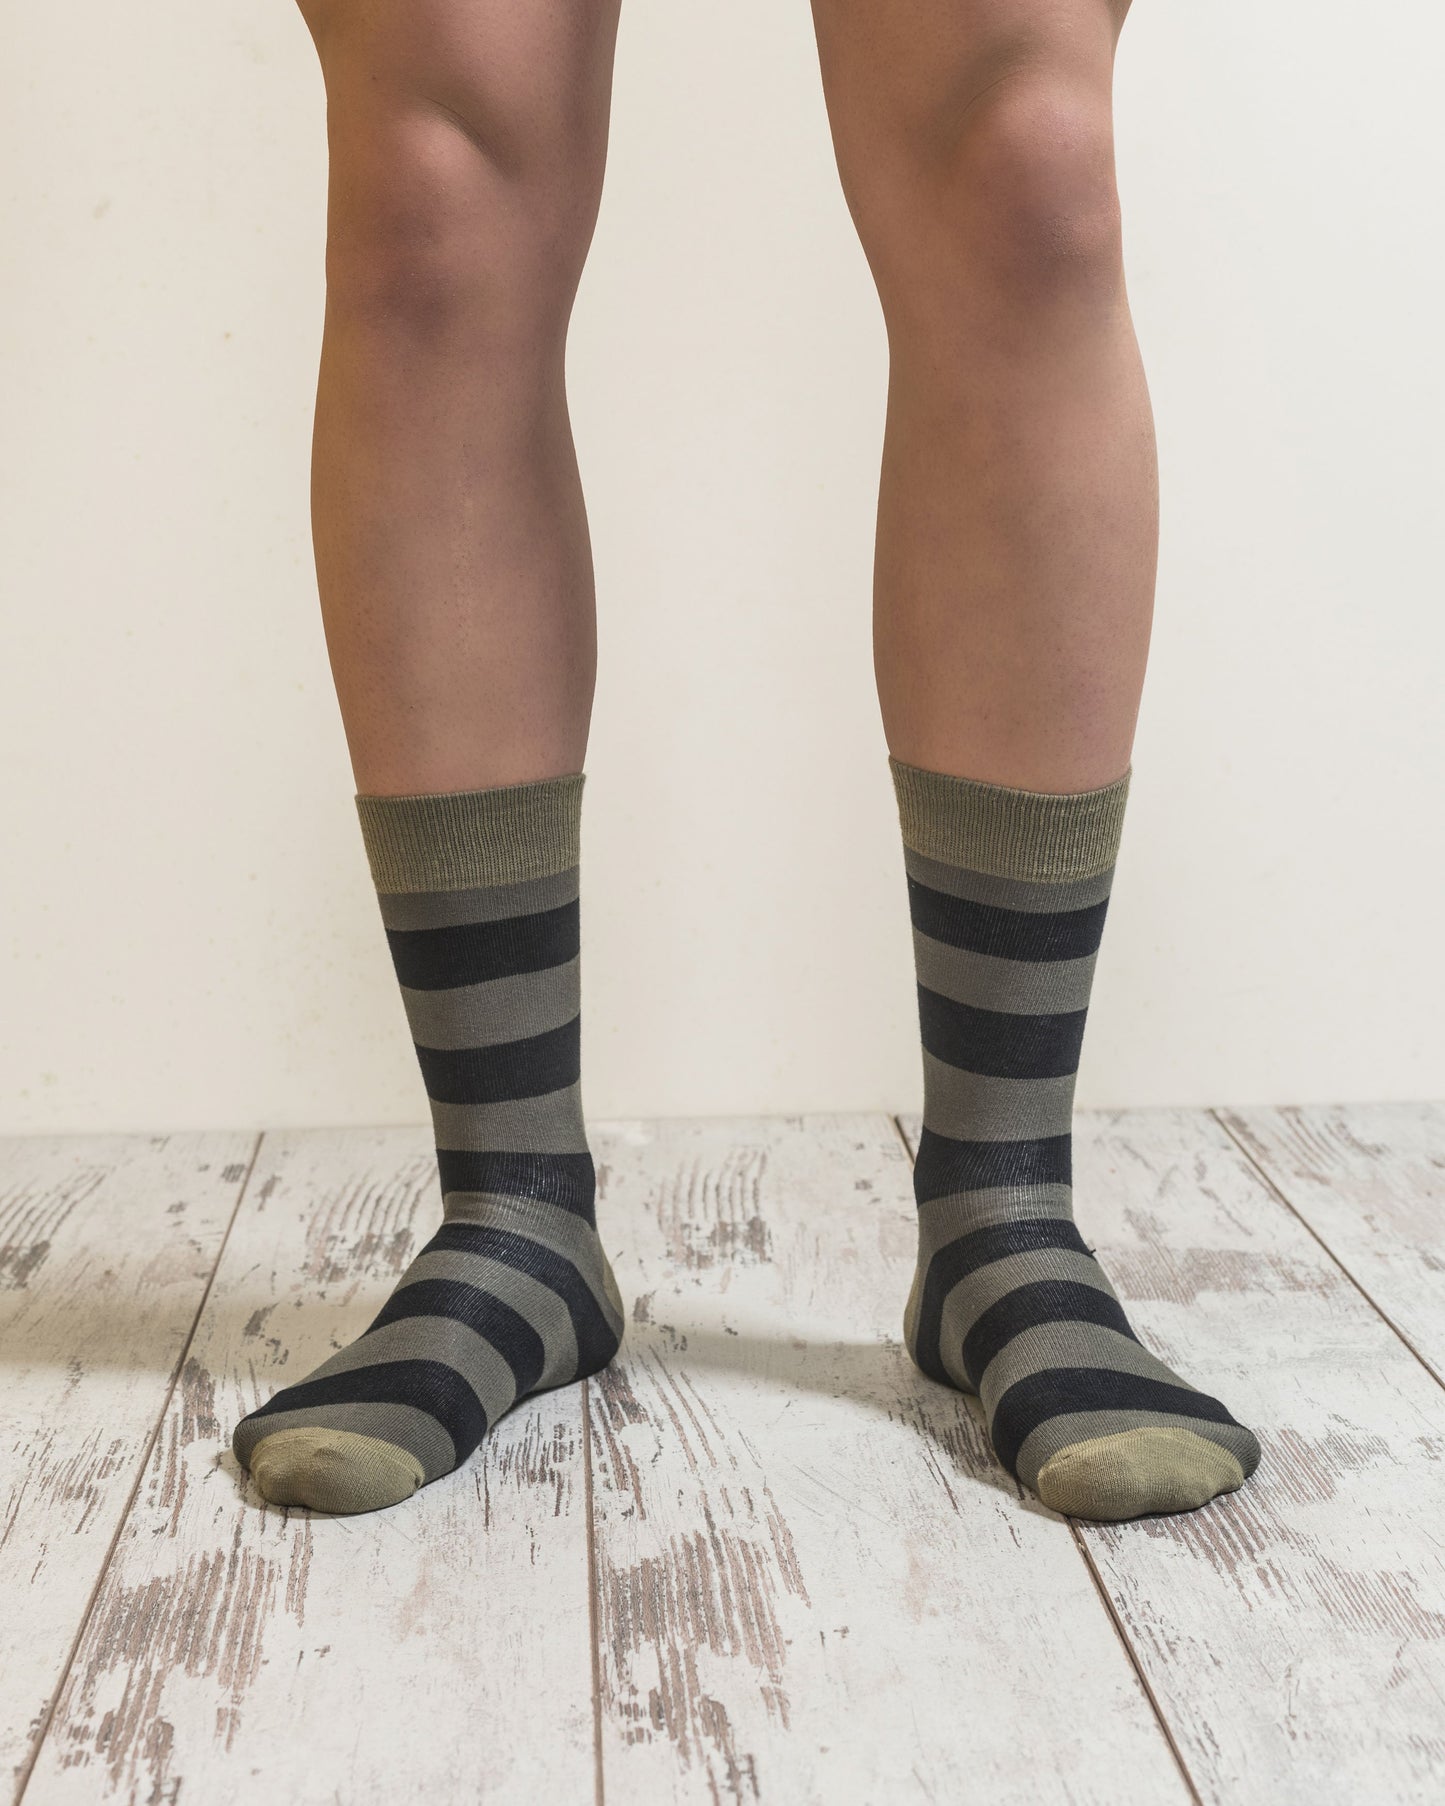 TEEK - Mens Olive Green Mix Socks Set SOCKS theteekdotcom   